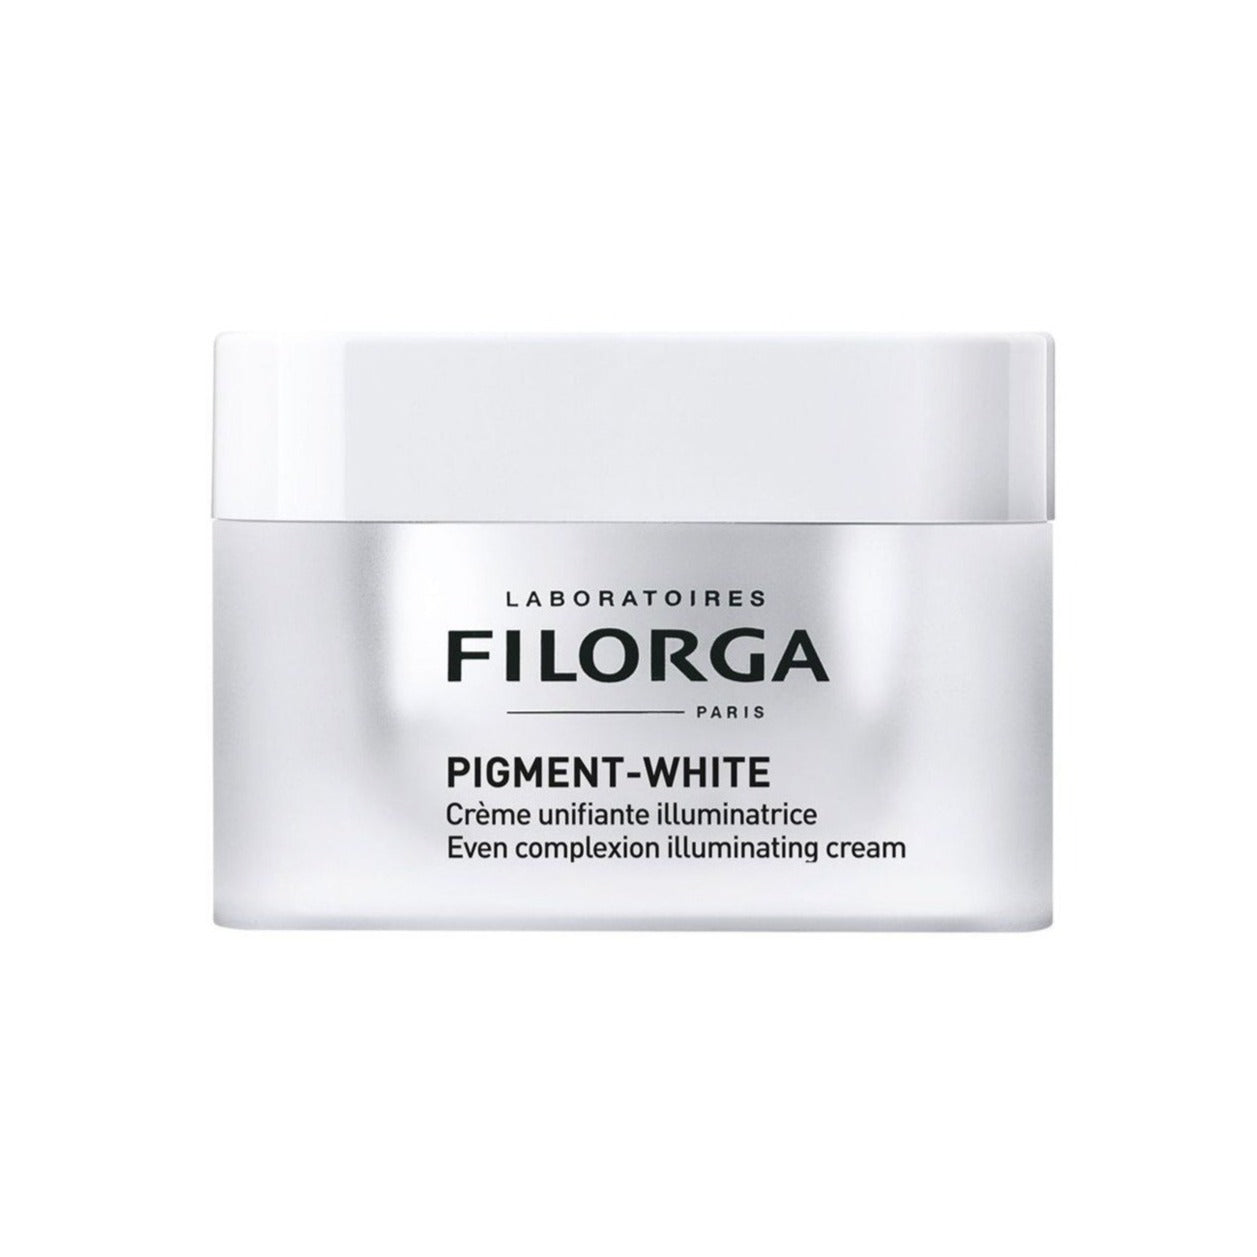 filorga-pigment-white-soin-illuminateur-taches-eclat